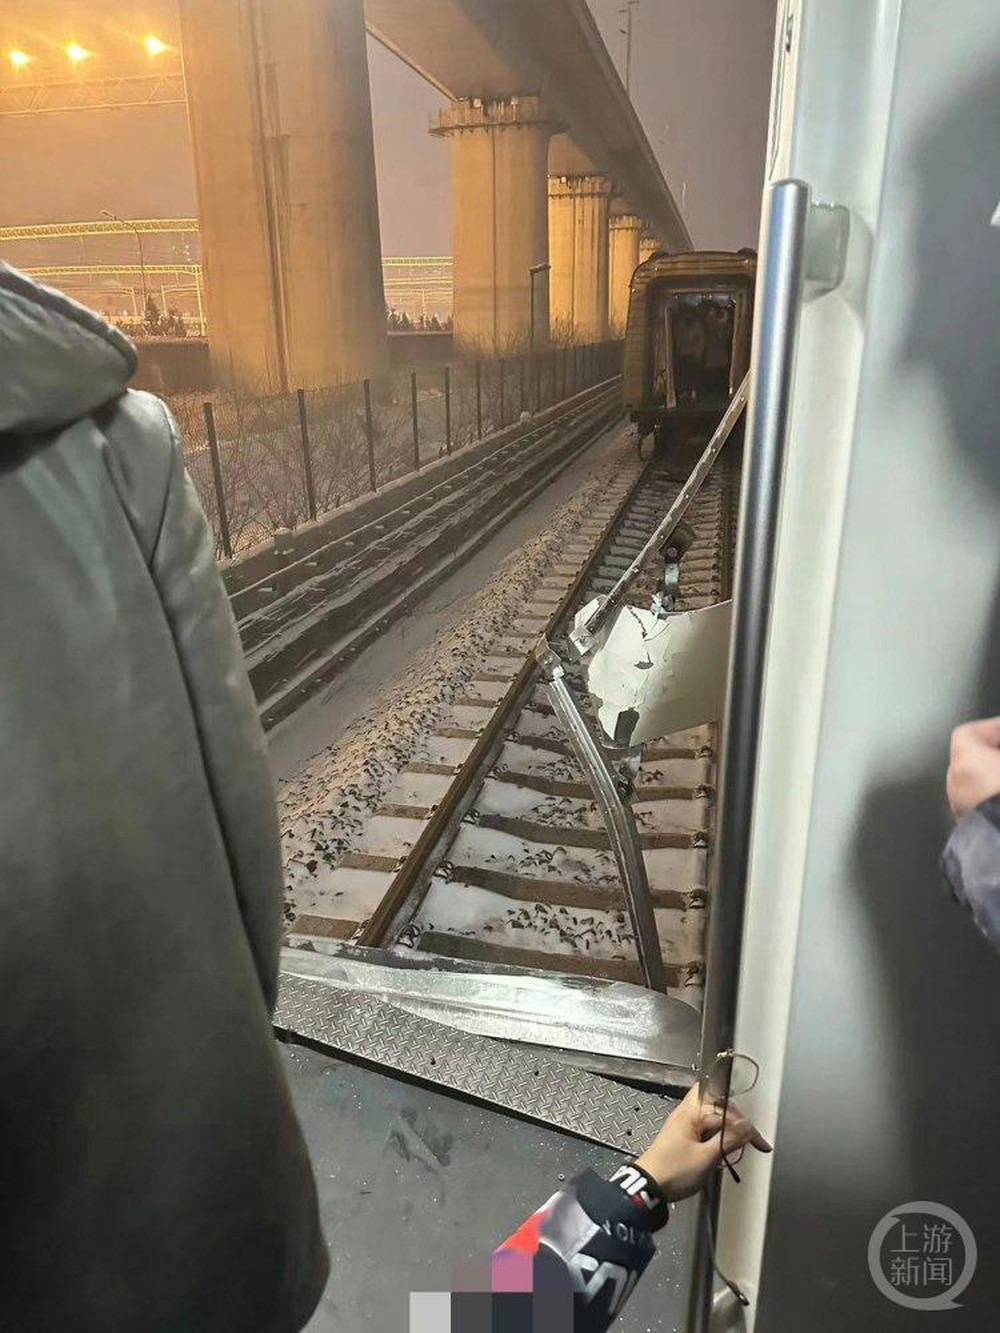 Tàu điện ngầm Bắc Kinh đang chạy bỗng đứt lìa toa giữa giờ cao điểm, 30 người bị thương - Ảnh 1.